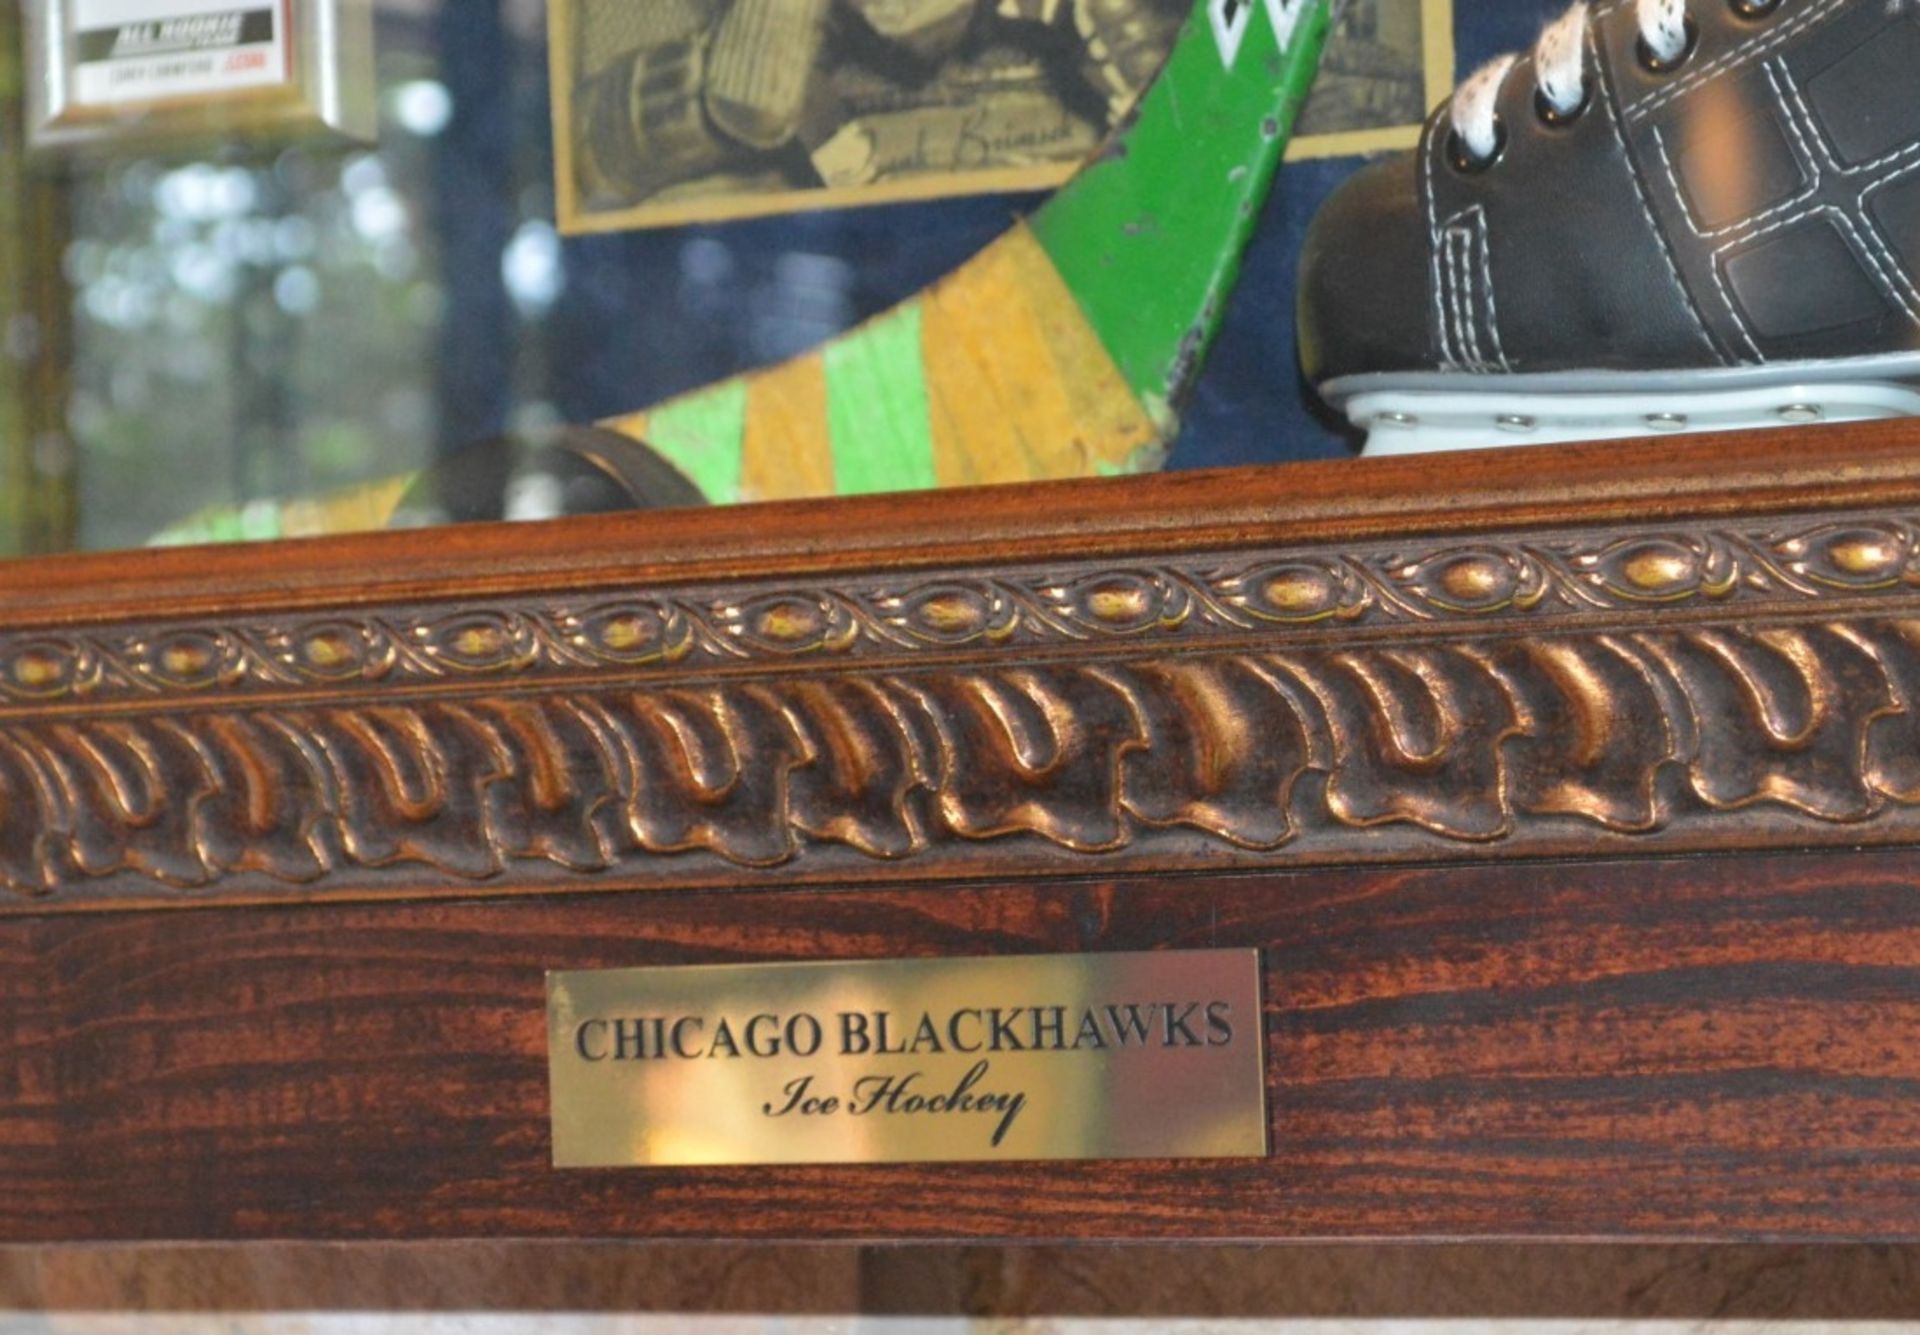 1 x Americana Wall Mounted Illuminated Display Case - CHICAGO BLACKHAWKS ICE HOCKEY - Includes - Image 3 of 5